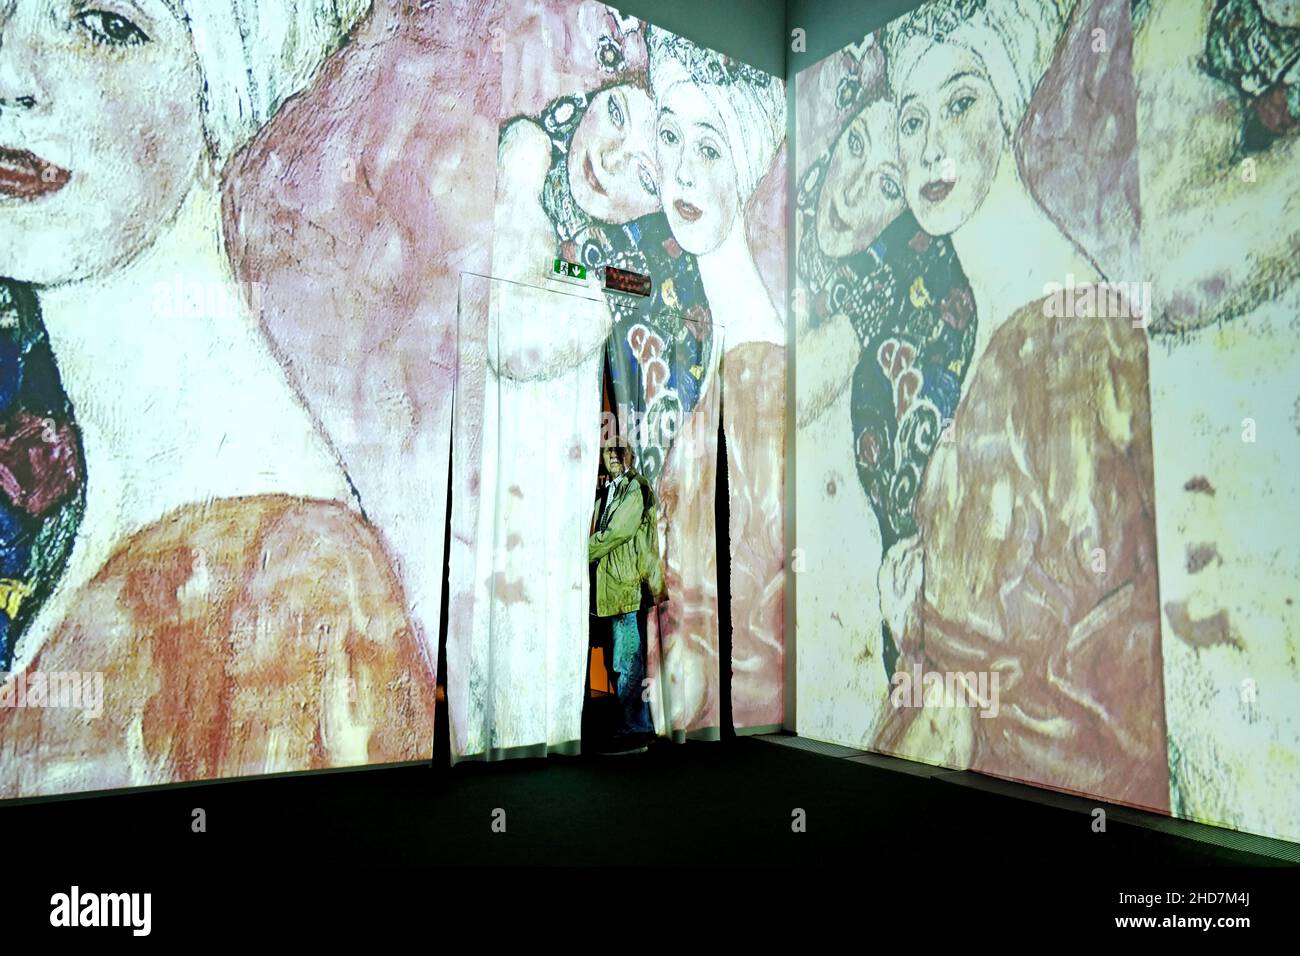 Experiencia Klimt, exposición de arte multimedia del famoso pintor austriaco, en Milán. Foto de stock